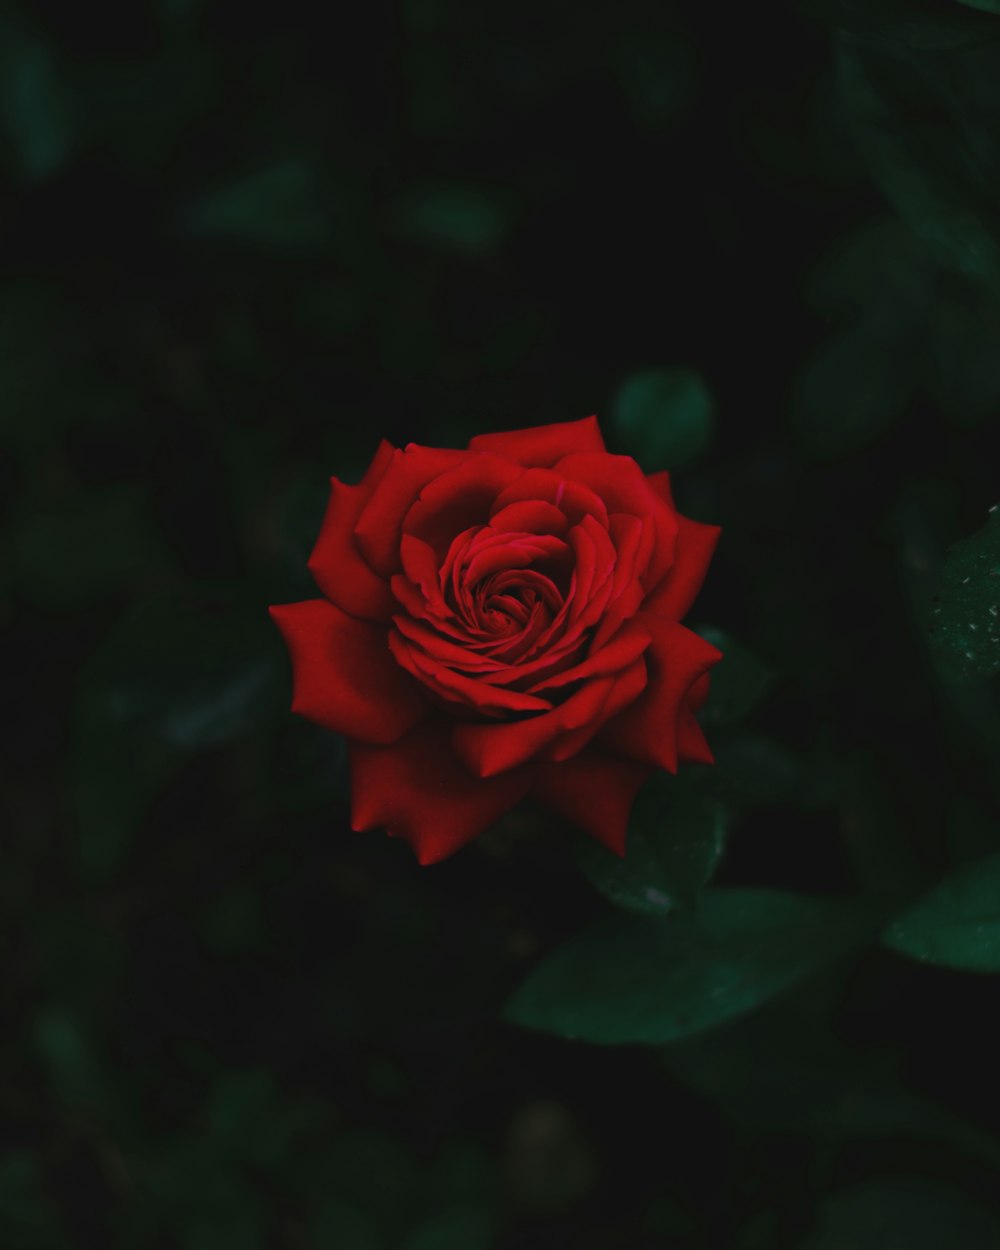 rosa roja en flor en fotografía de primer plano